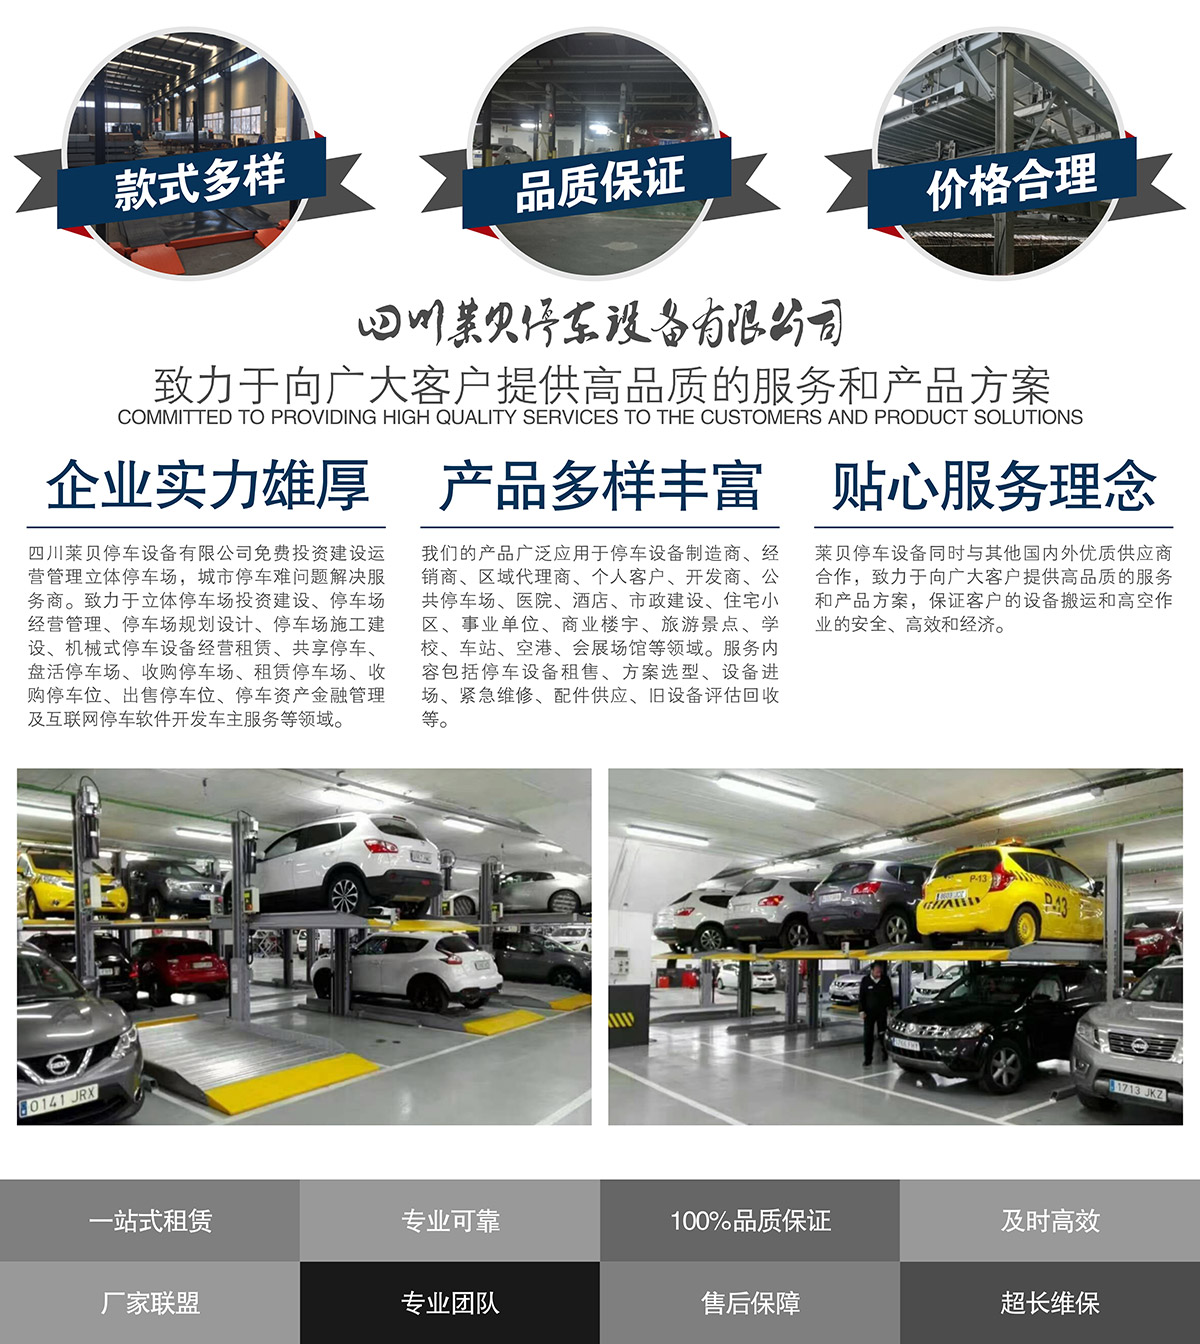 贵阳莱贝智慧停车投资经营提供高品质的服务和产品方案.jpg